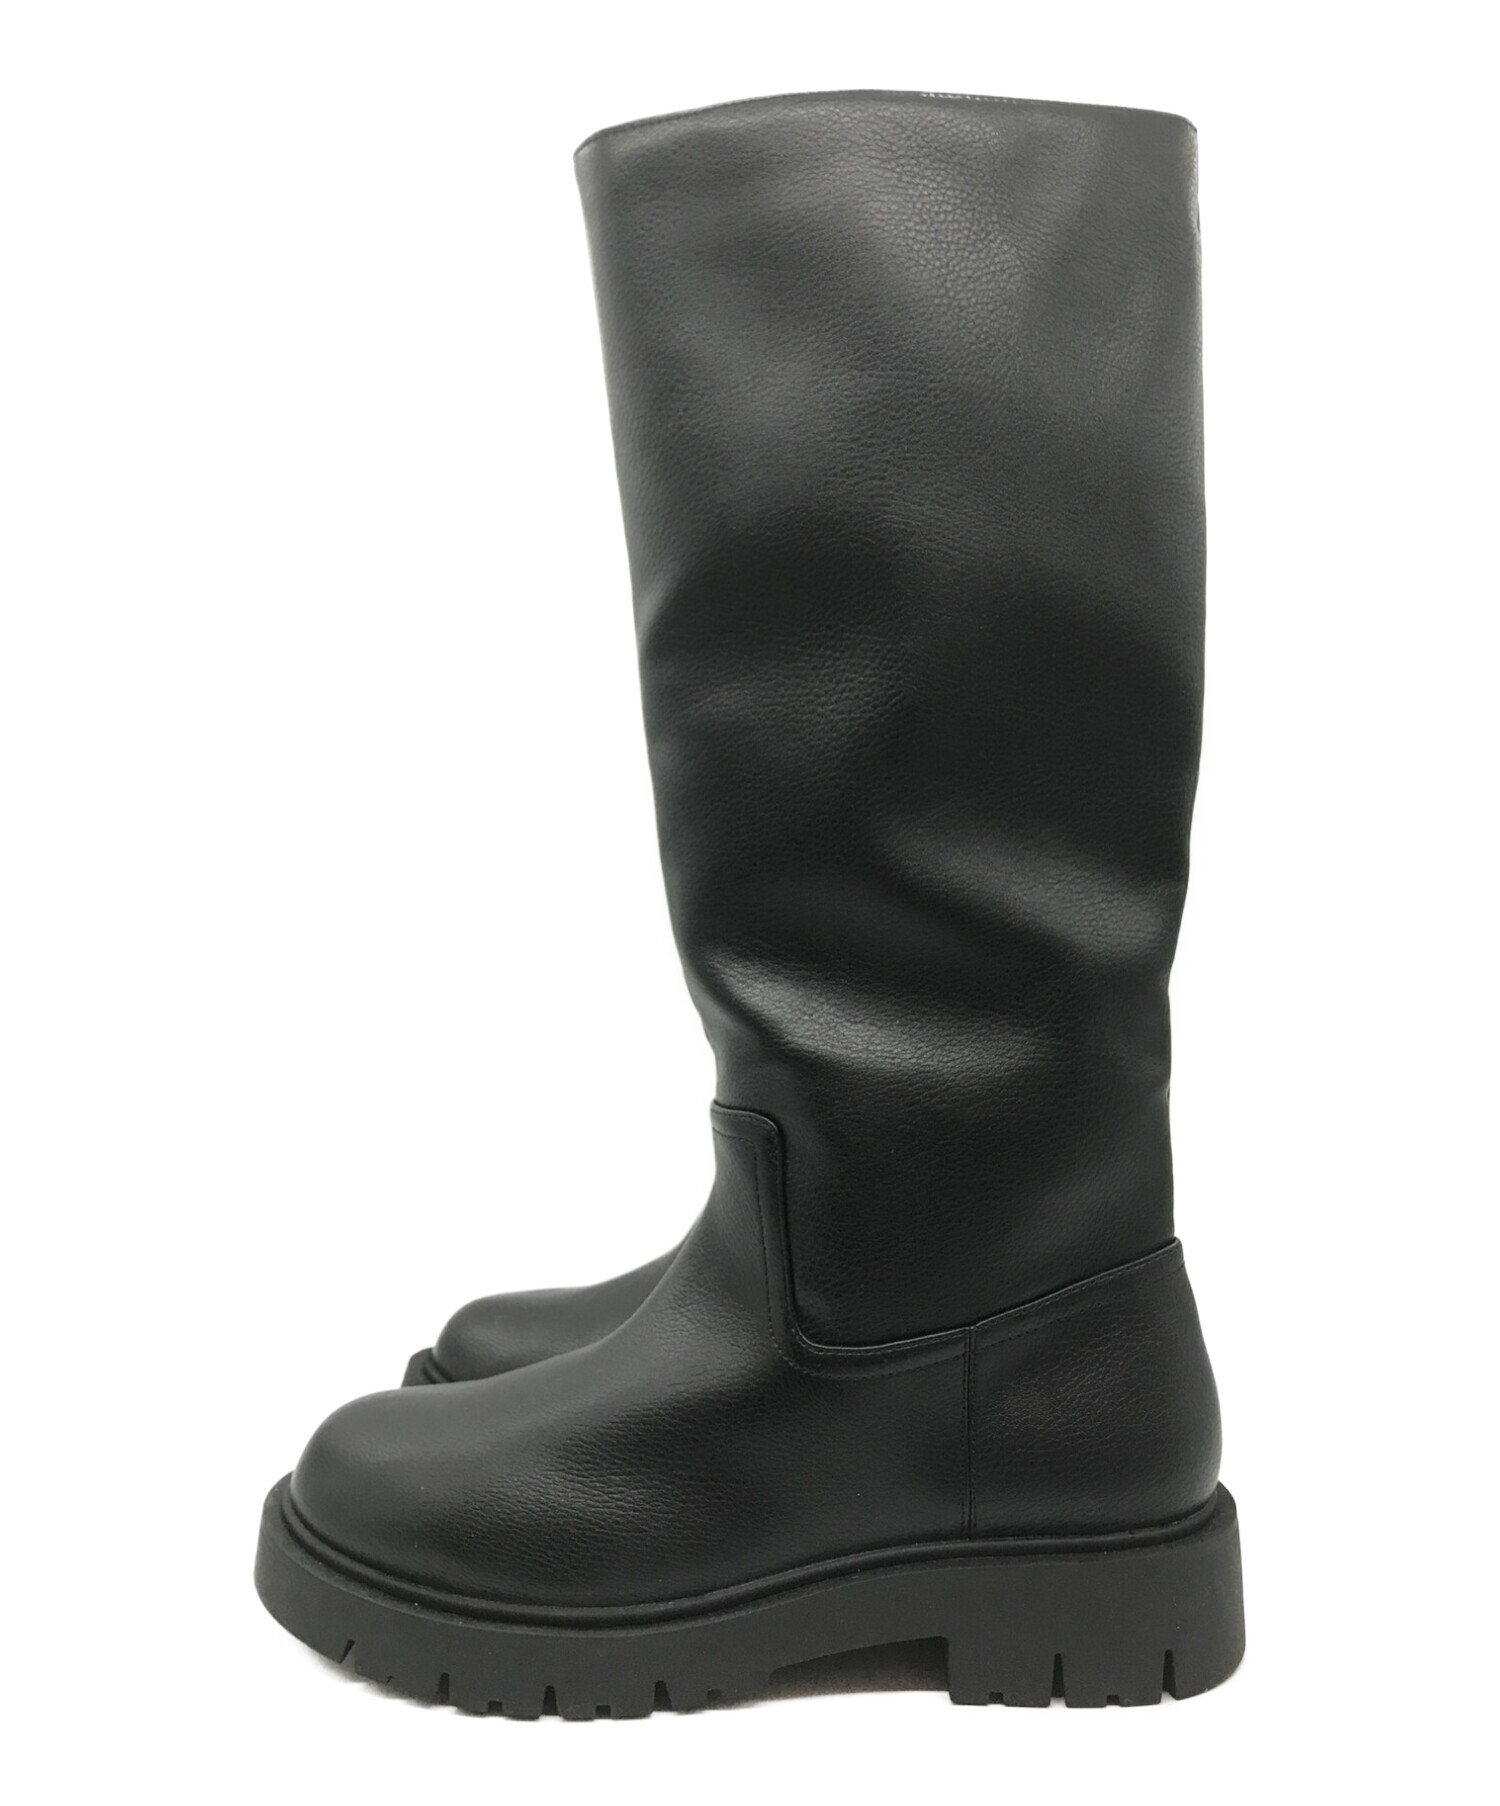 UNIQLO C (ユニクロシー) コンフィールタッチロングブーツ ブラック サイズ:25.0